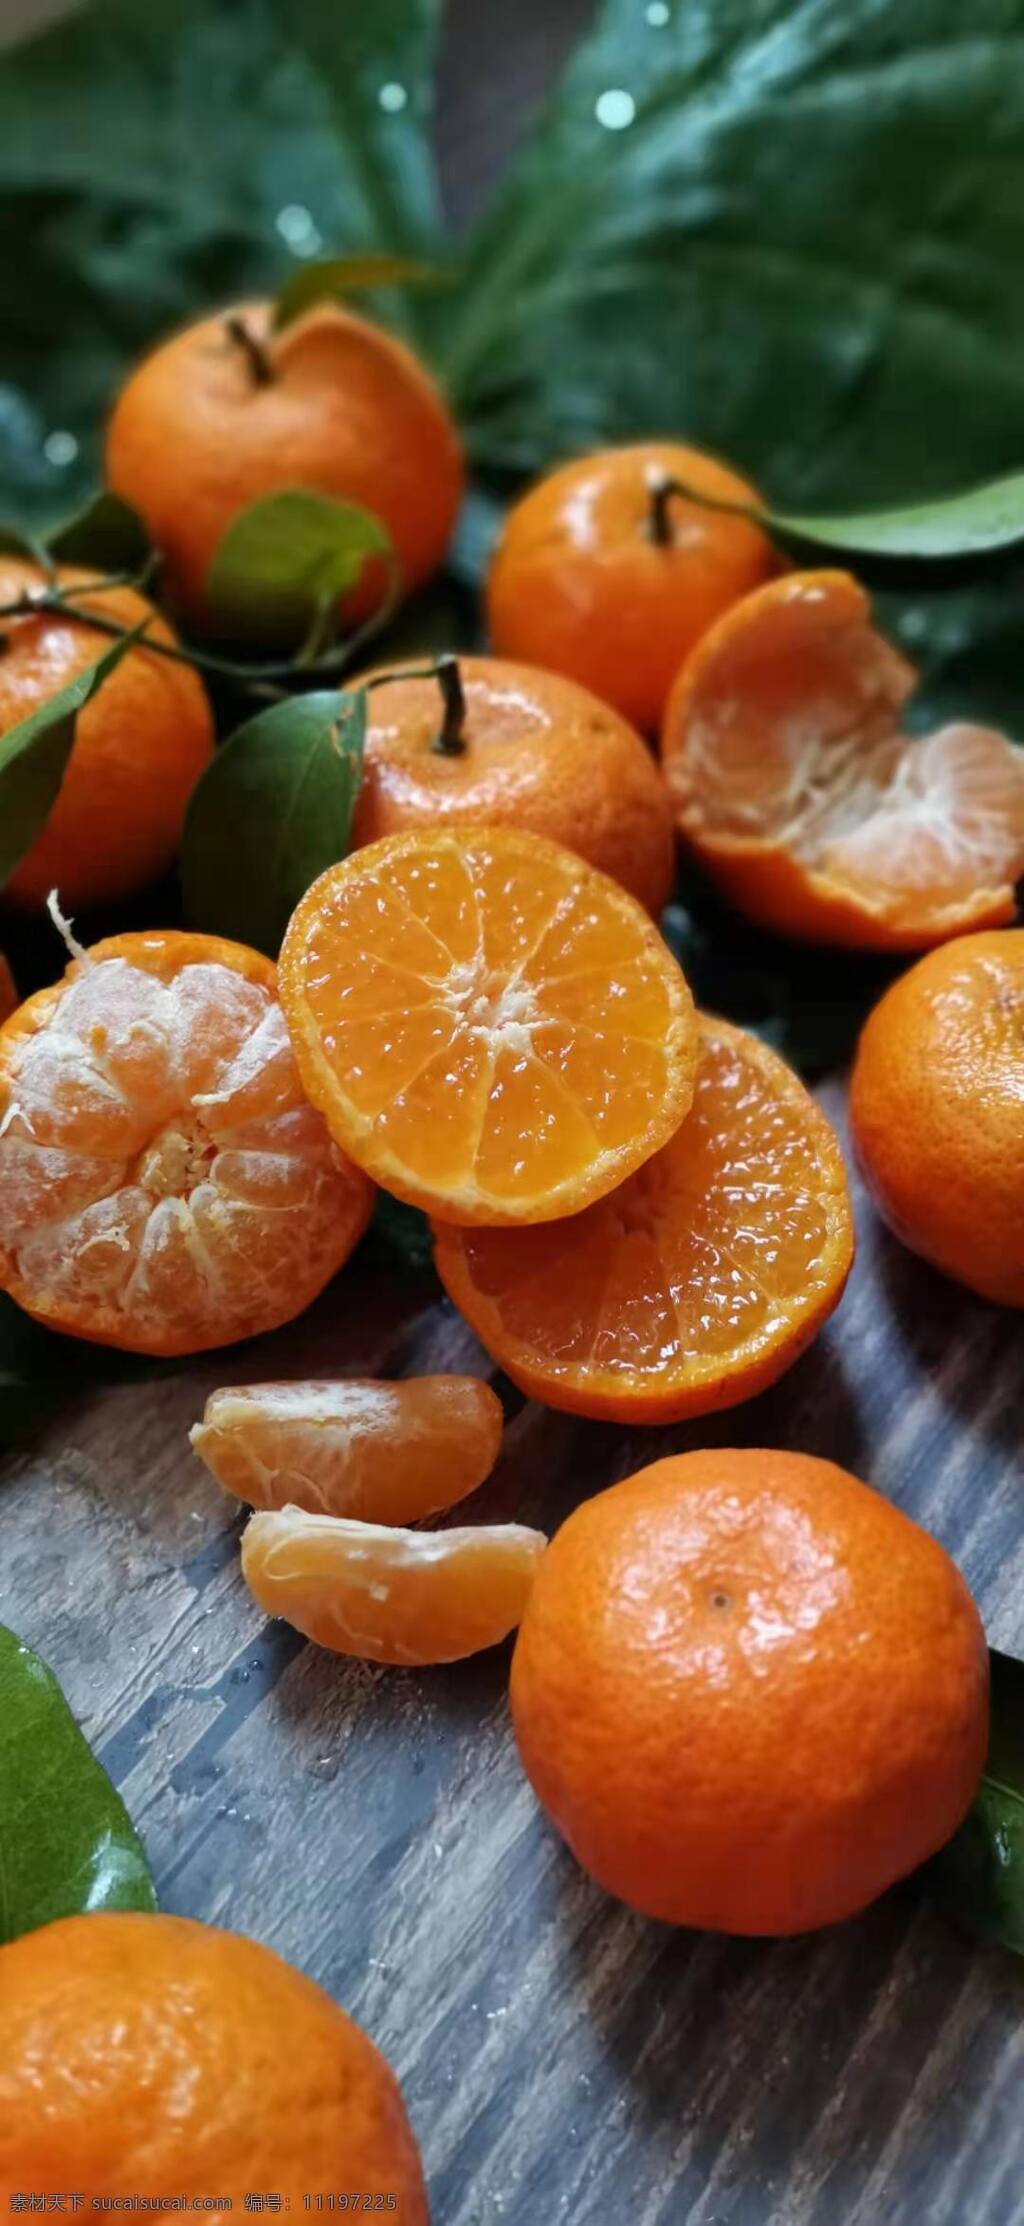 砂糖橘 桔子 橘子图片 砂糖桔 橘子 新鲜水果 当季水果 应季水果 小桔子 甜桔子 生物世界 水果